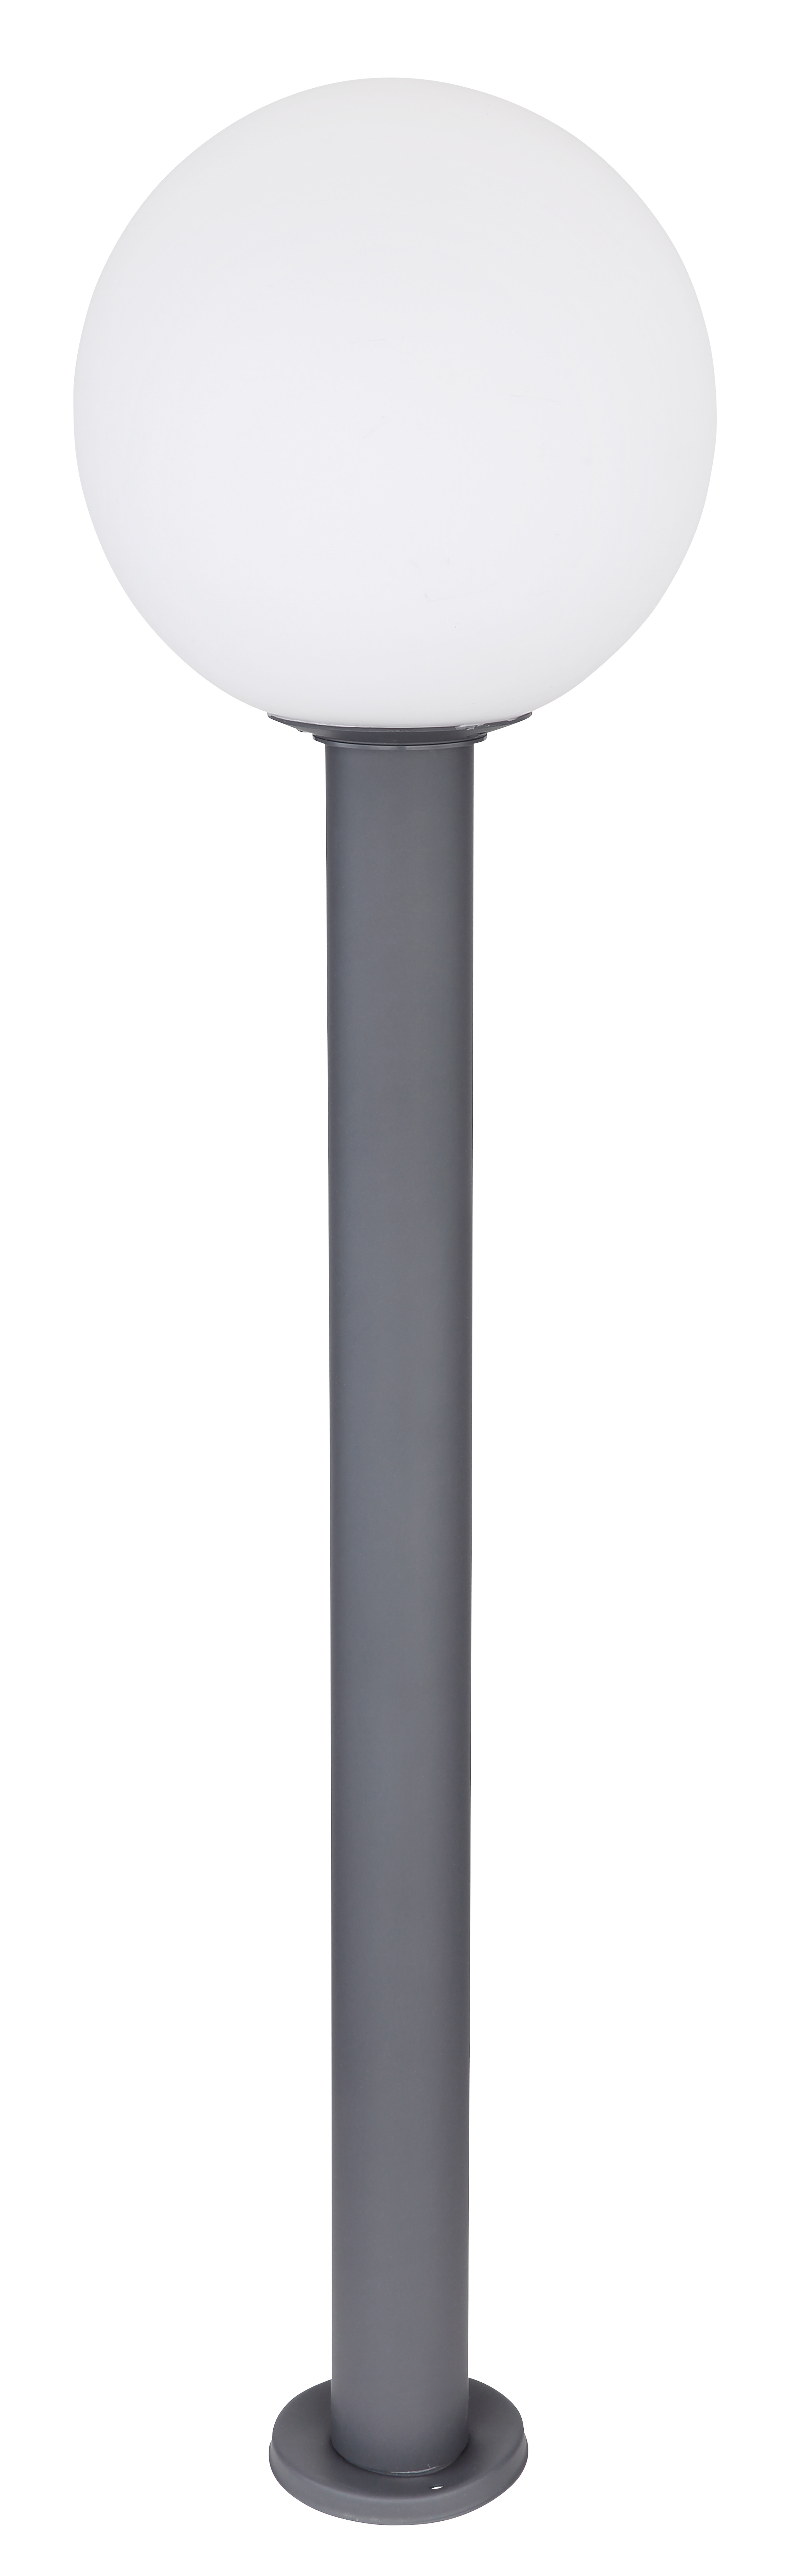 Bašt. svjetiljka Ossy LED E27 maks.15W 100cm antracit/bela Globo